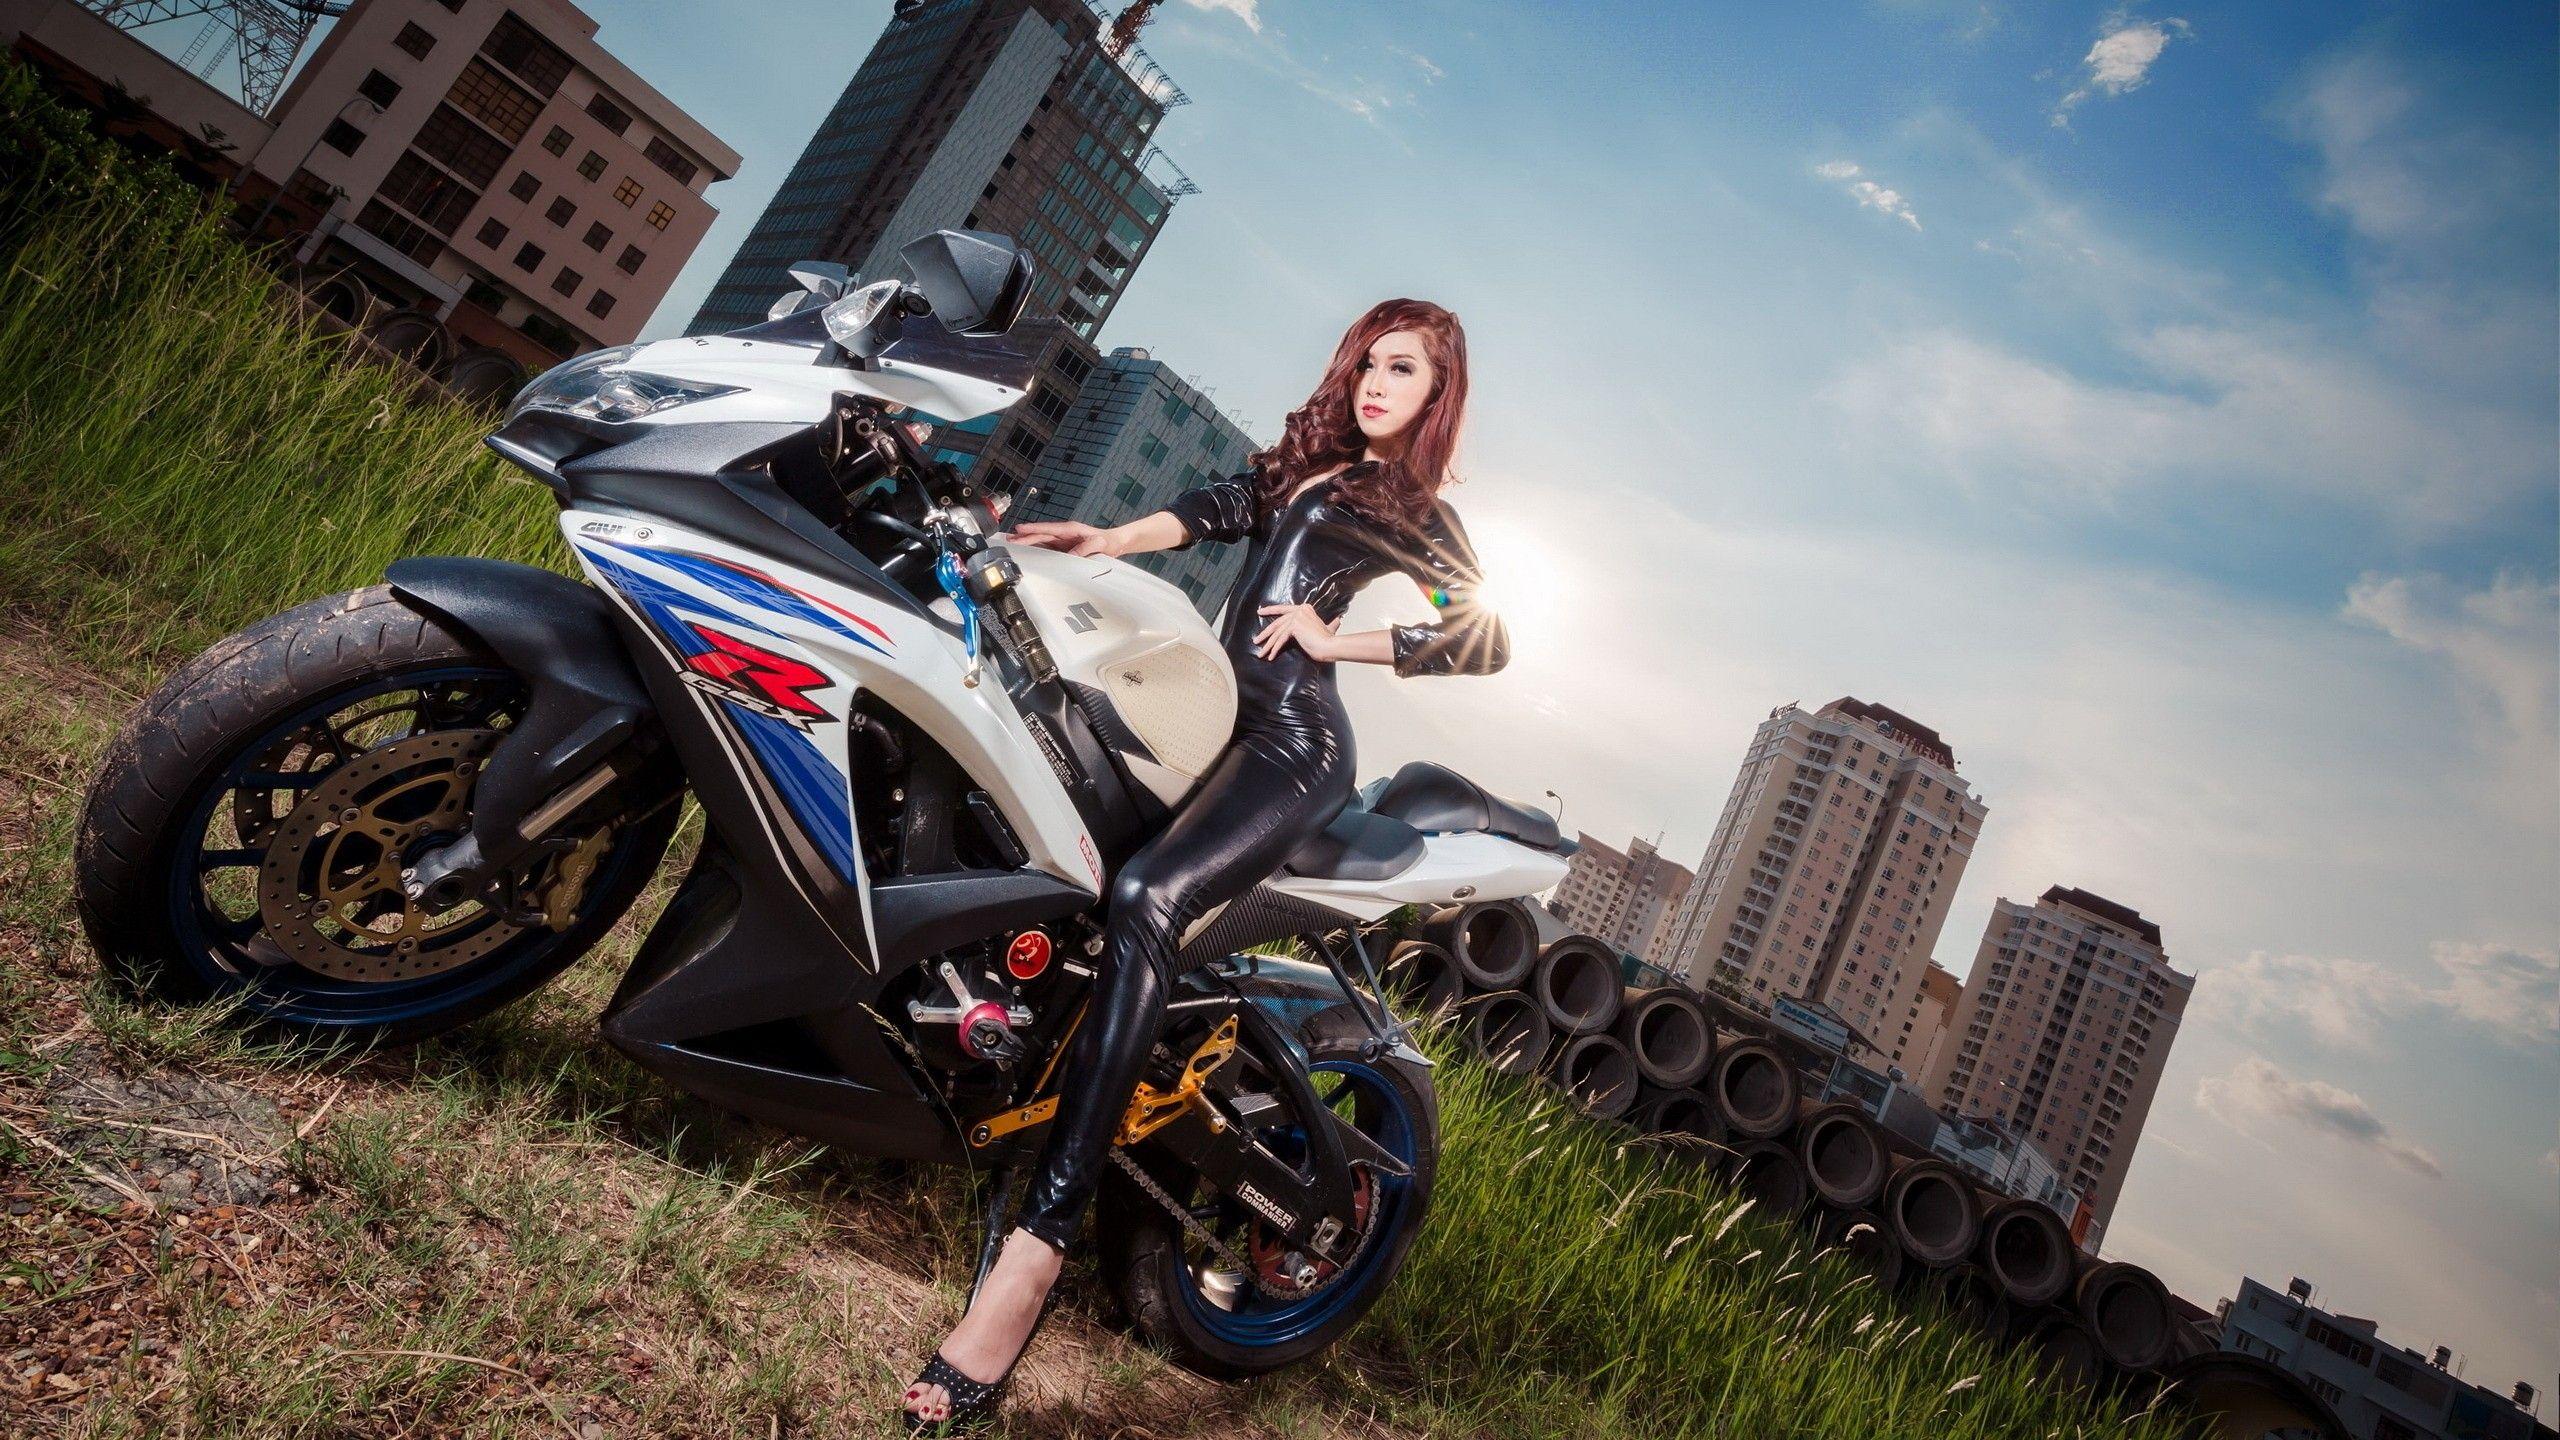 Suzuki GSX R, HD Bikes, 4k Wallpaper, Image, Background, Photo